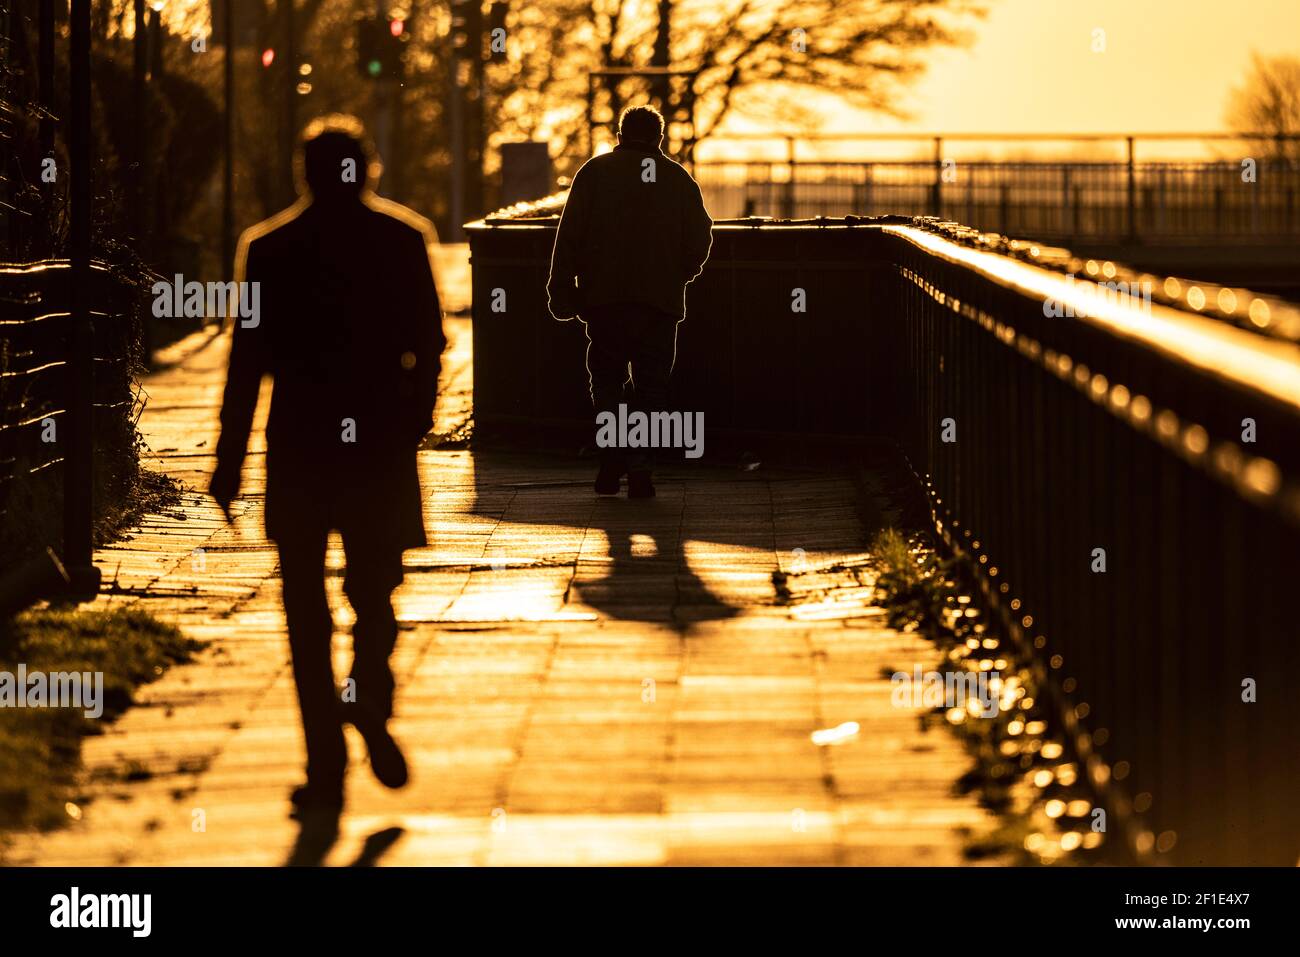 Uomo, anziano, camminando su un marciapiede, un secondo uomo che lo segue, nel sole che tramonta, lunga ombra gettata, immagine simbolica, Essen, NRW, Germania Foto Stock